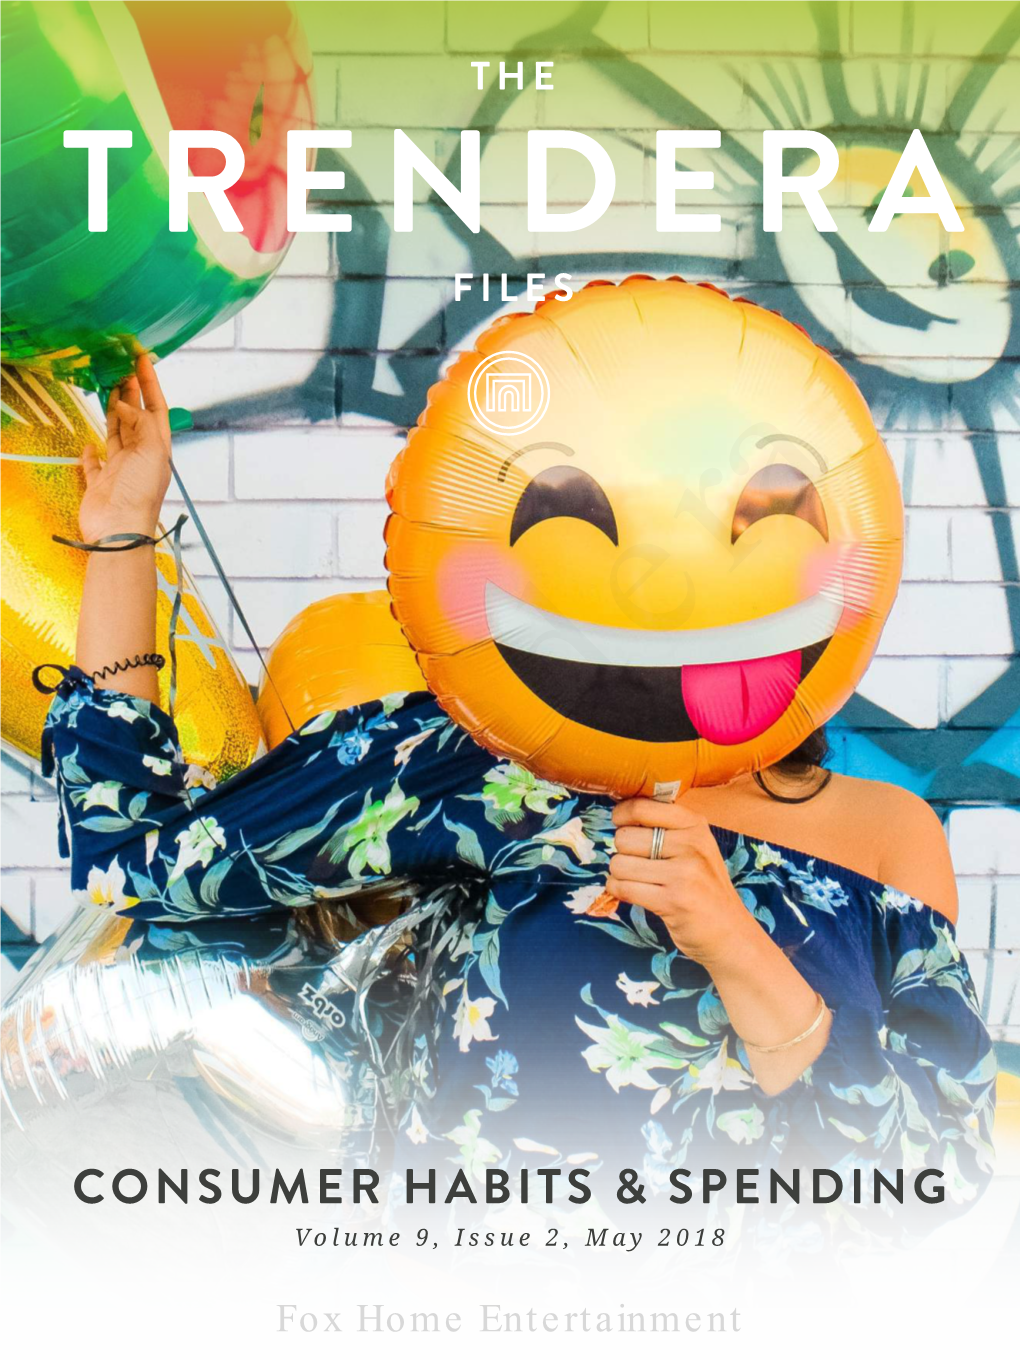 Consumer Habits & Spending